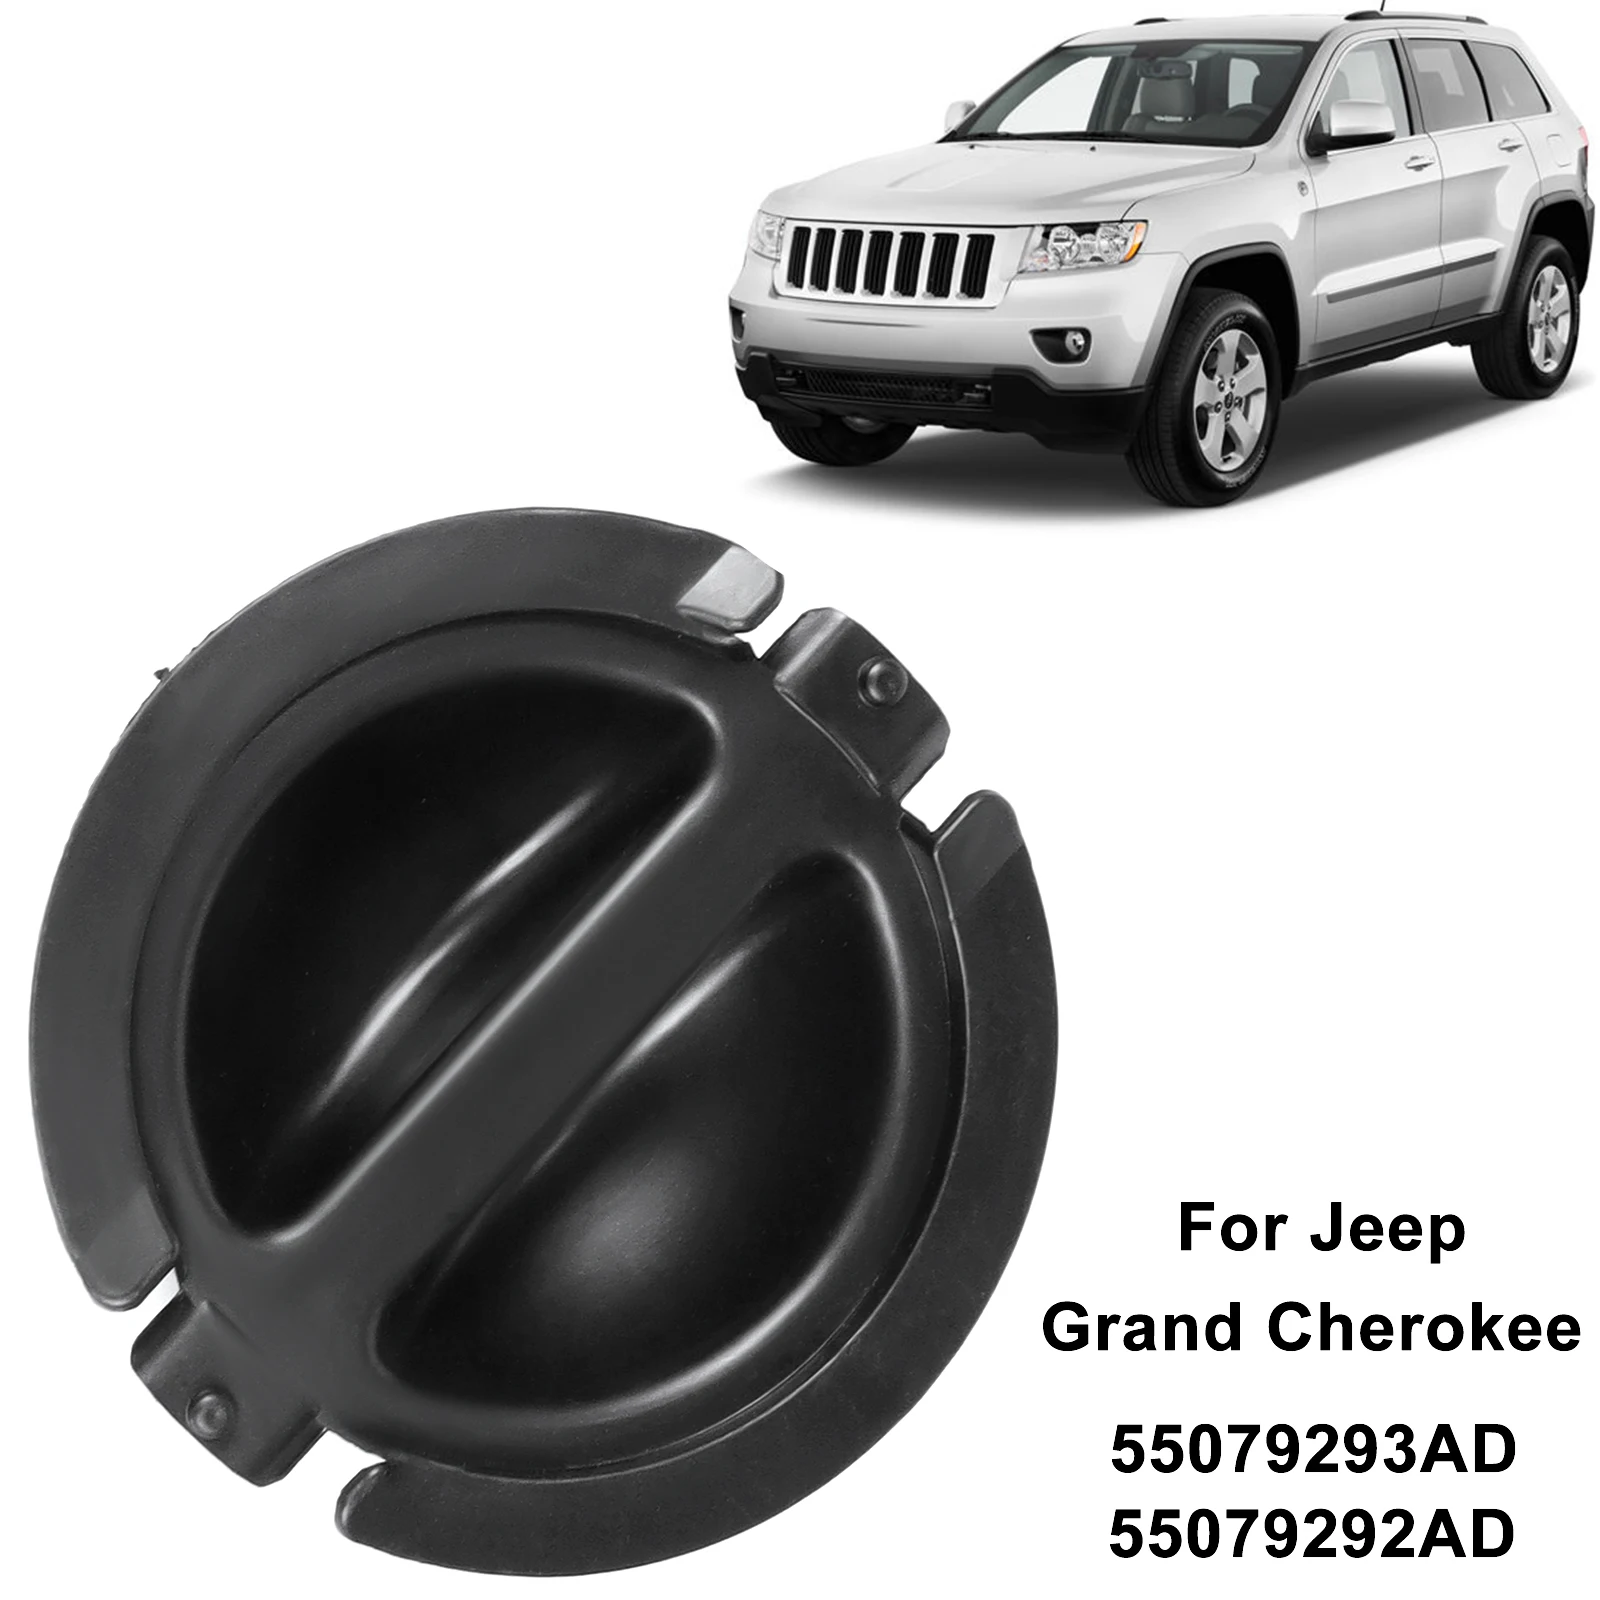 

Крышки для переднего левого и правого крыла автомобиля, замена крышек для Jeep Grand Cherokee 2011-2017 55079292AD 55079293AD, автомобильные аксессуары